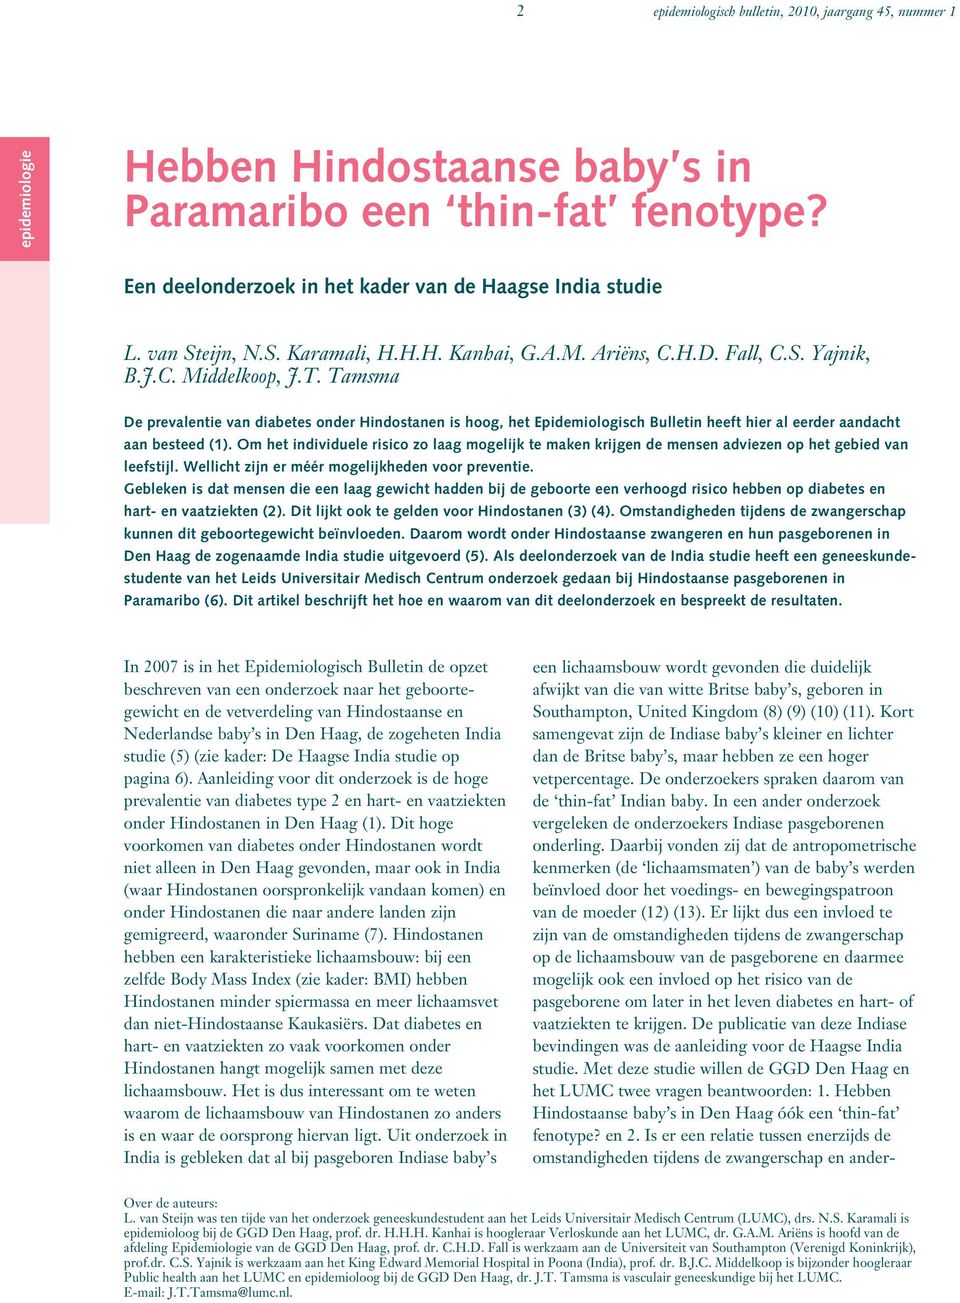 Tamsma De prevalentie van diabetes onder Hindostanen is hoog, het Epidemiologisch Bulletin heeft hier al eerder aandacht aan besteed (1).